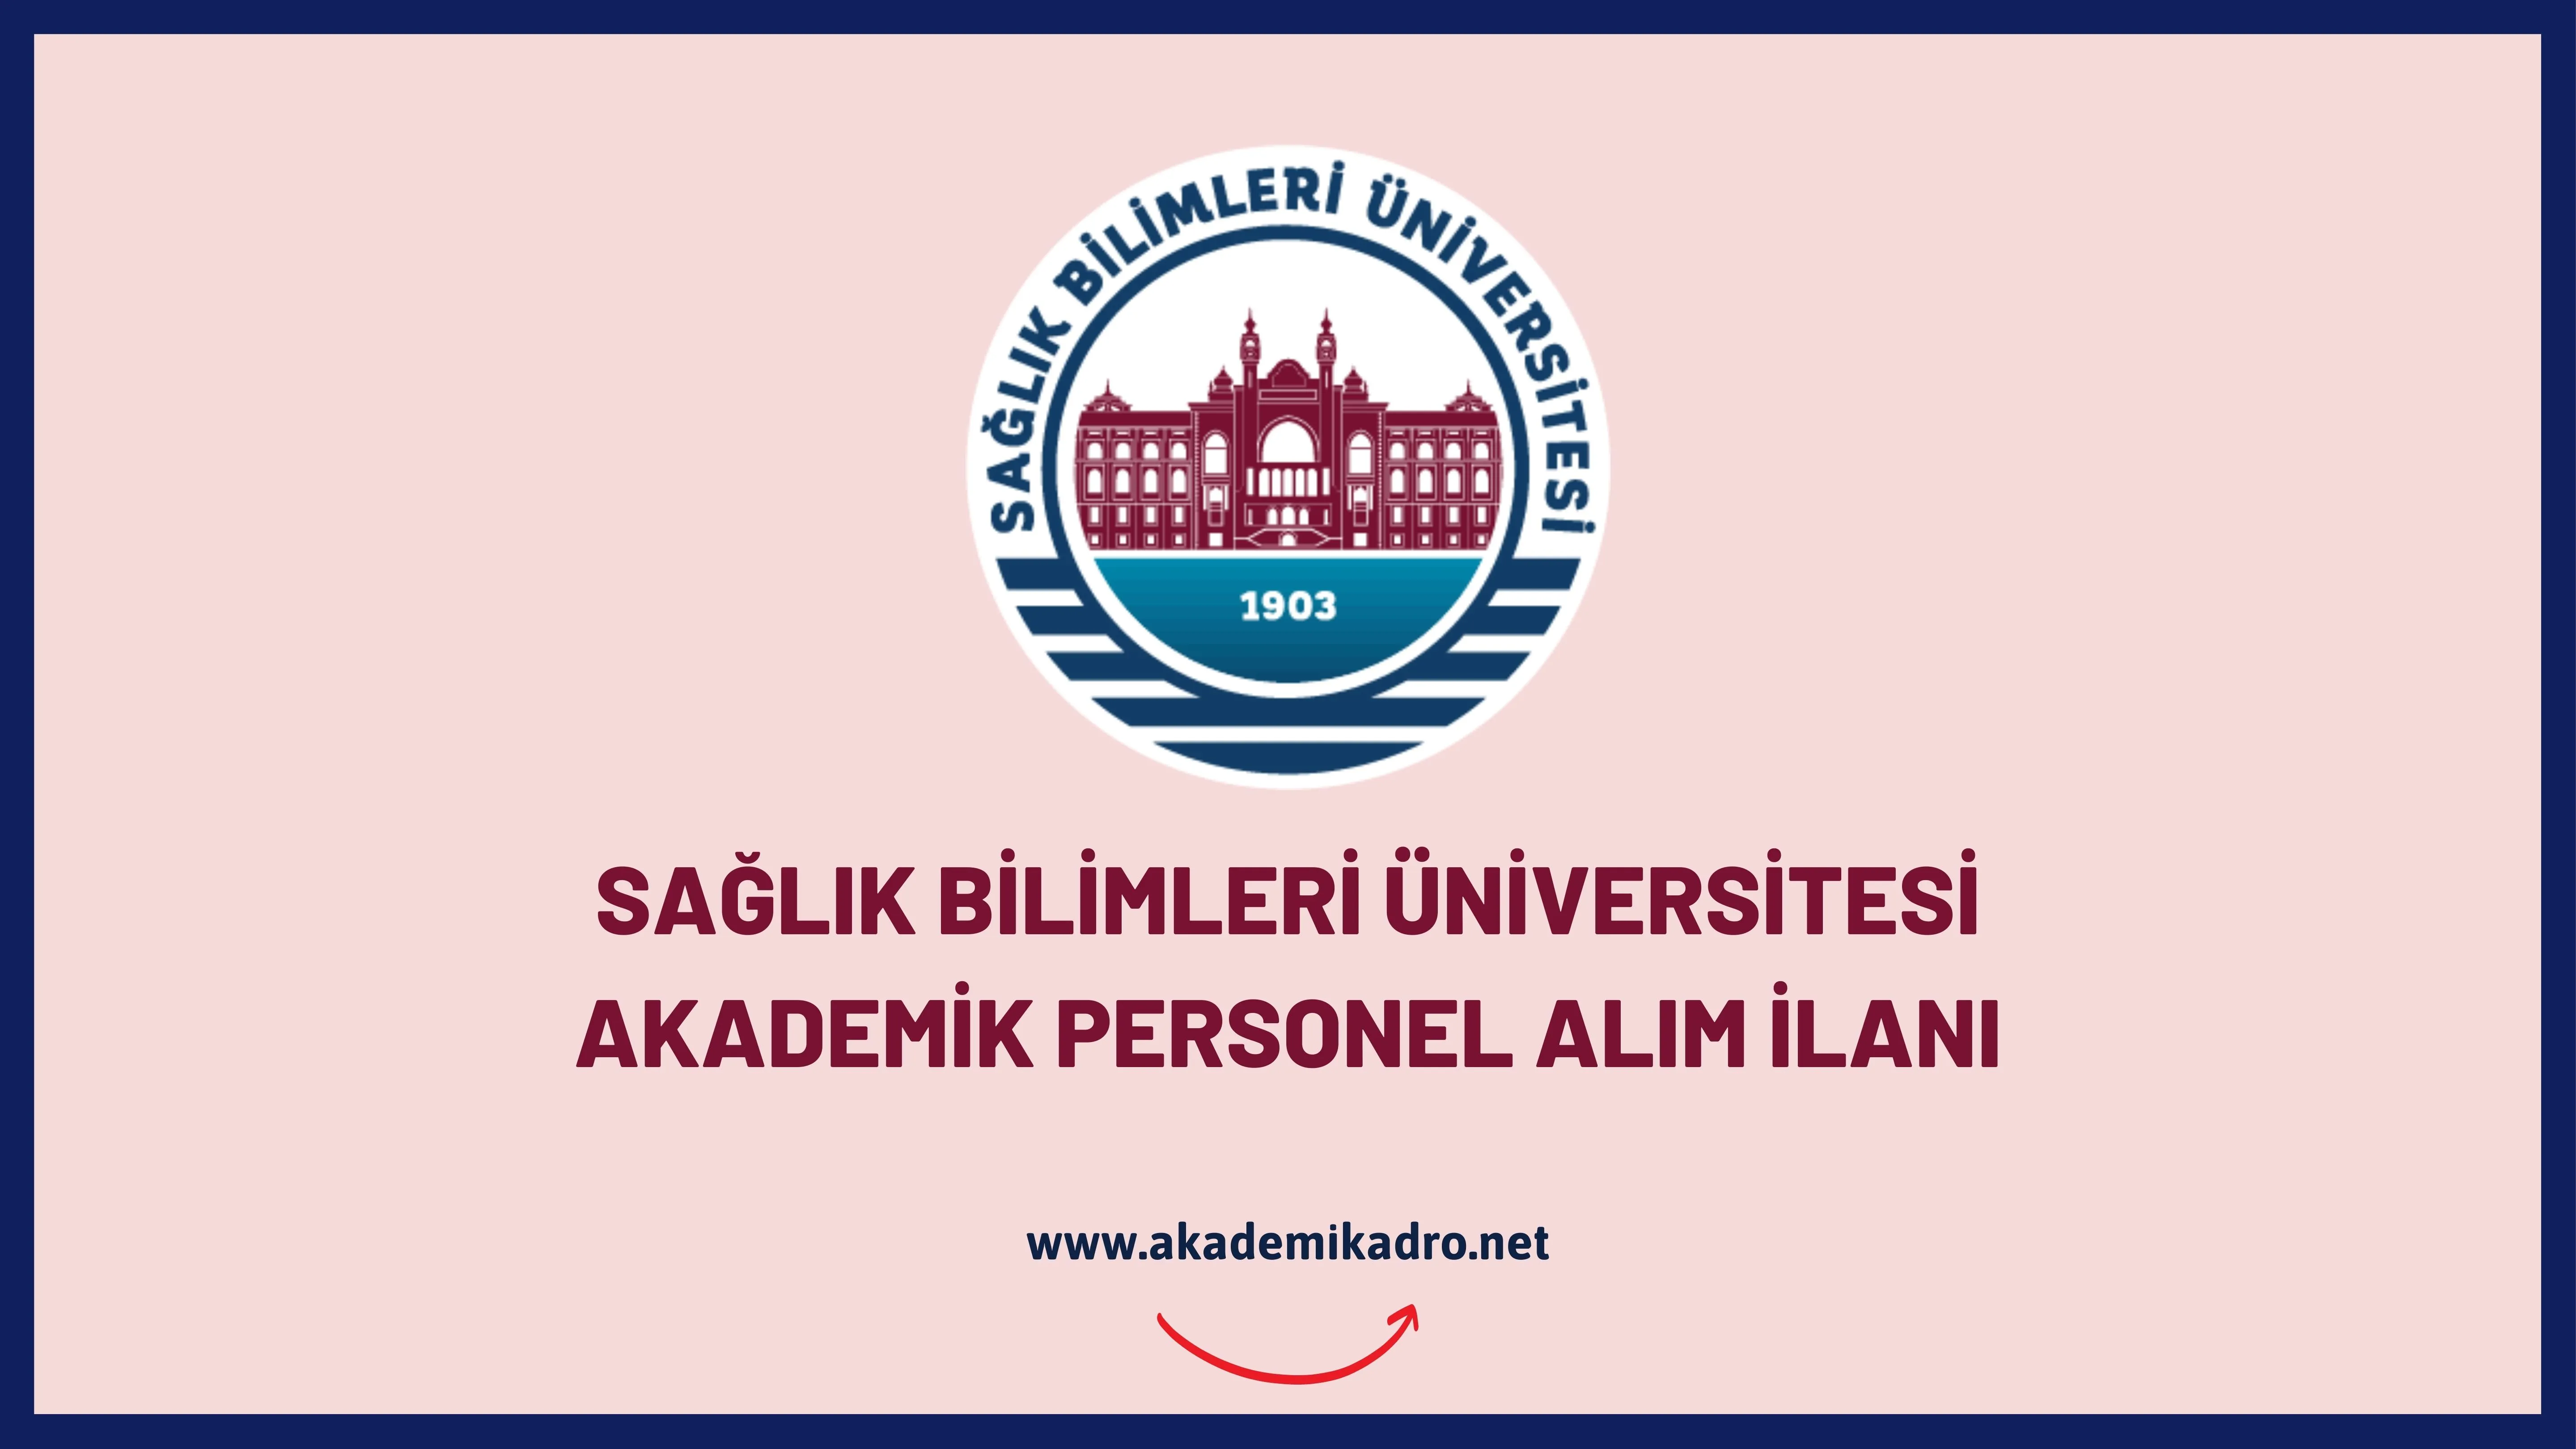 Sağlık Bilimleri Üniversitesi 71 akademik personel alacak.